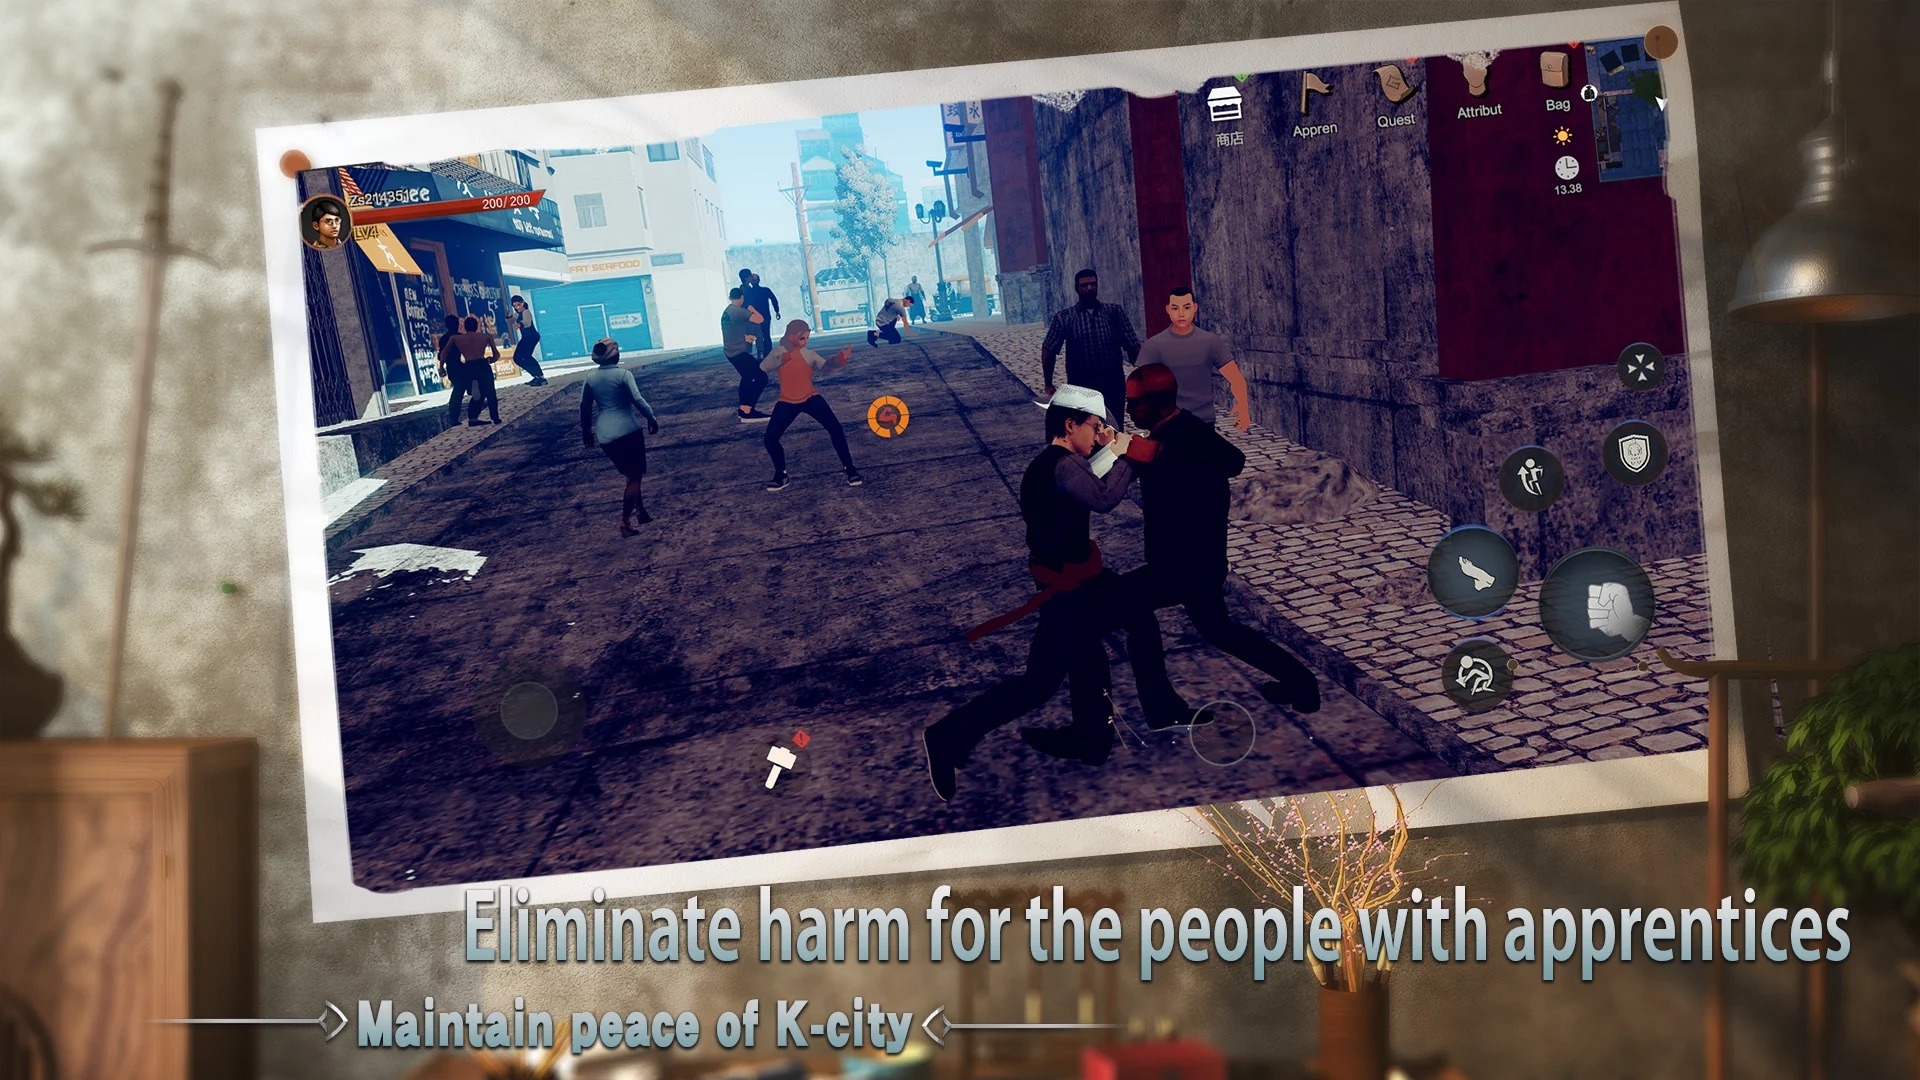 Pre Master: Game mobile hành động võ thuật đã có thể chơi được tại Việt Nam